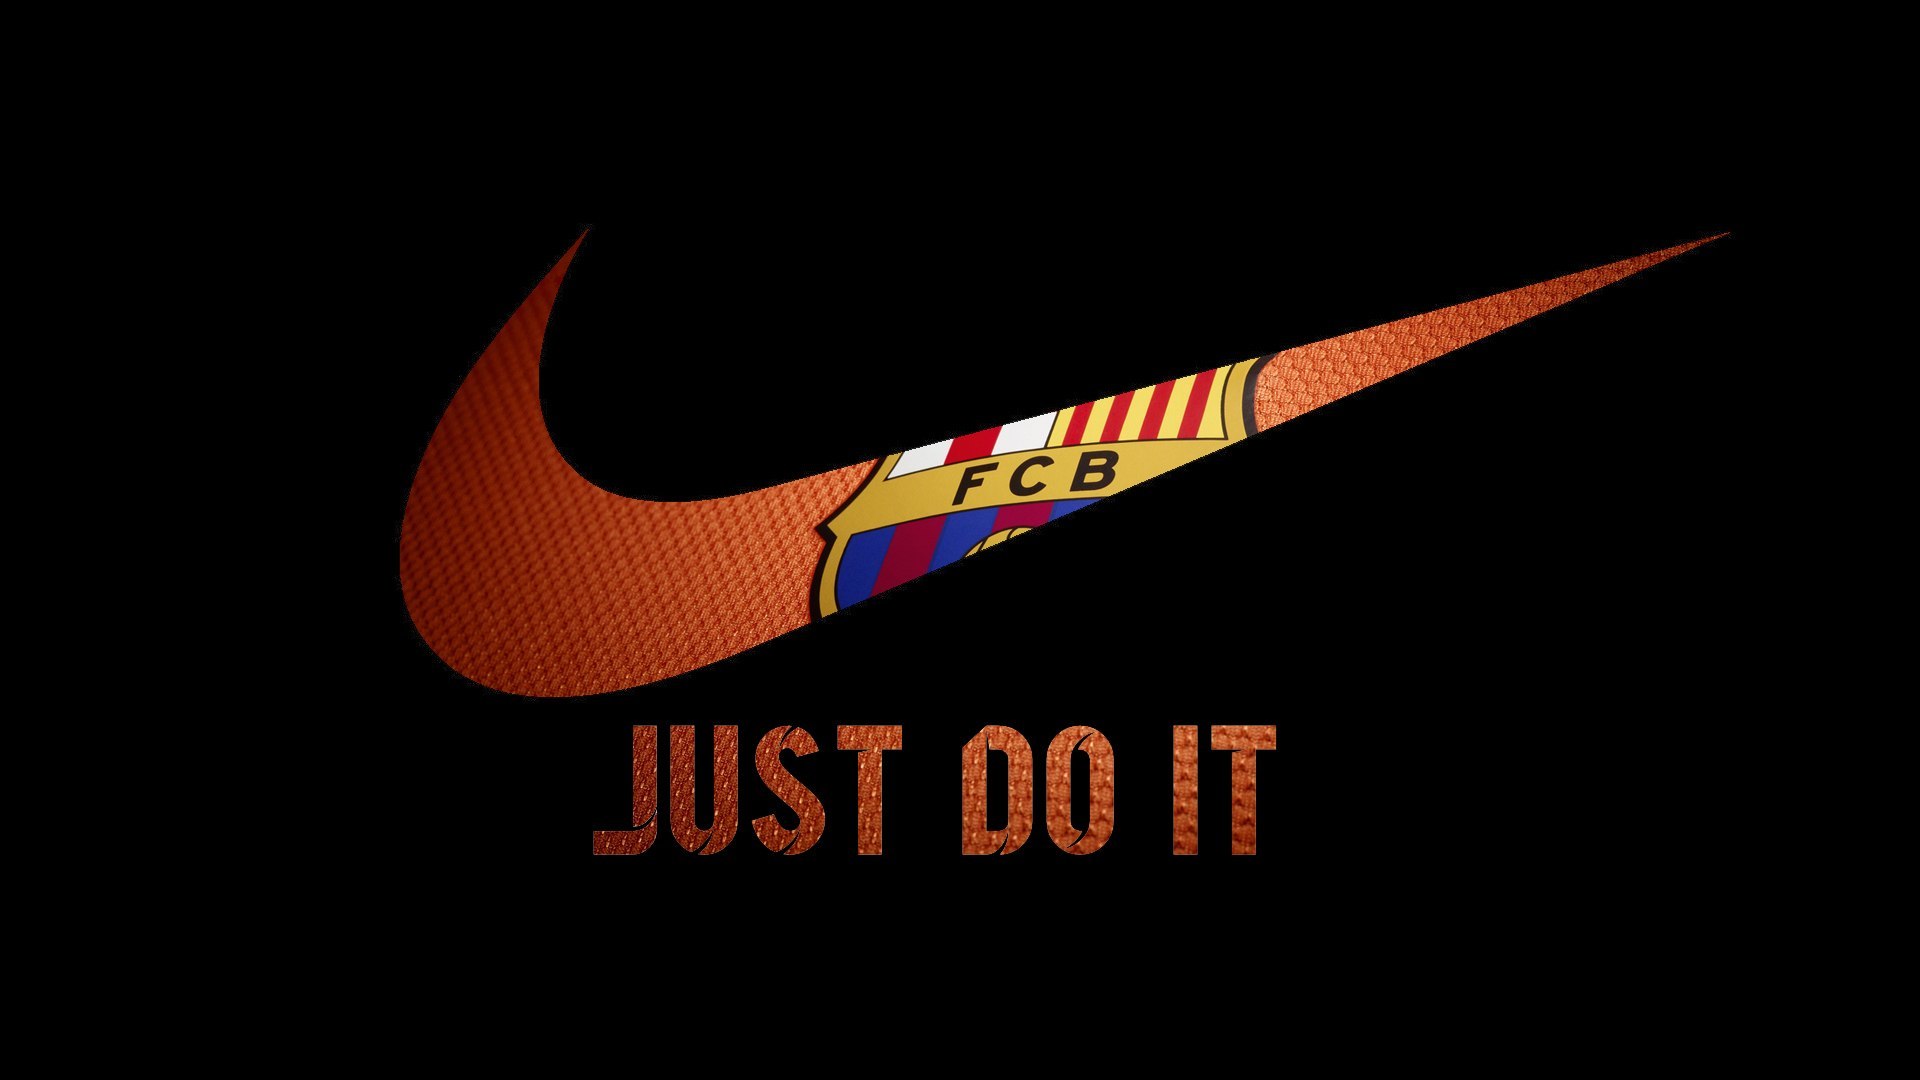 23 Nike photo - Download free images - Fonwall